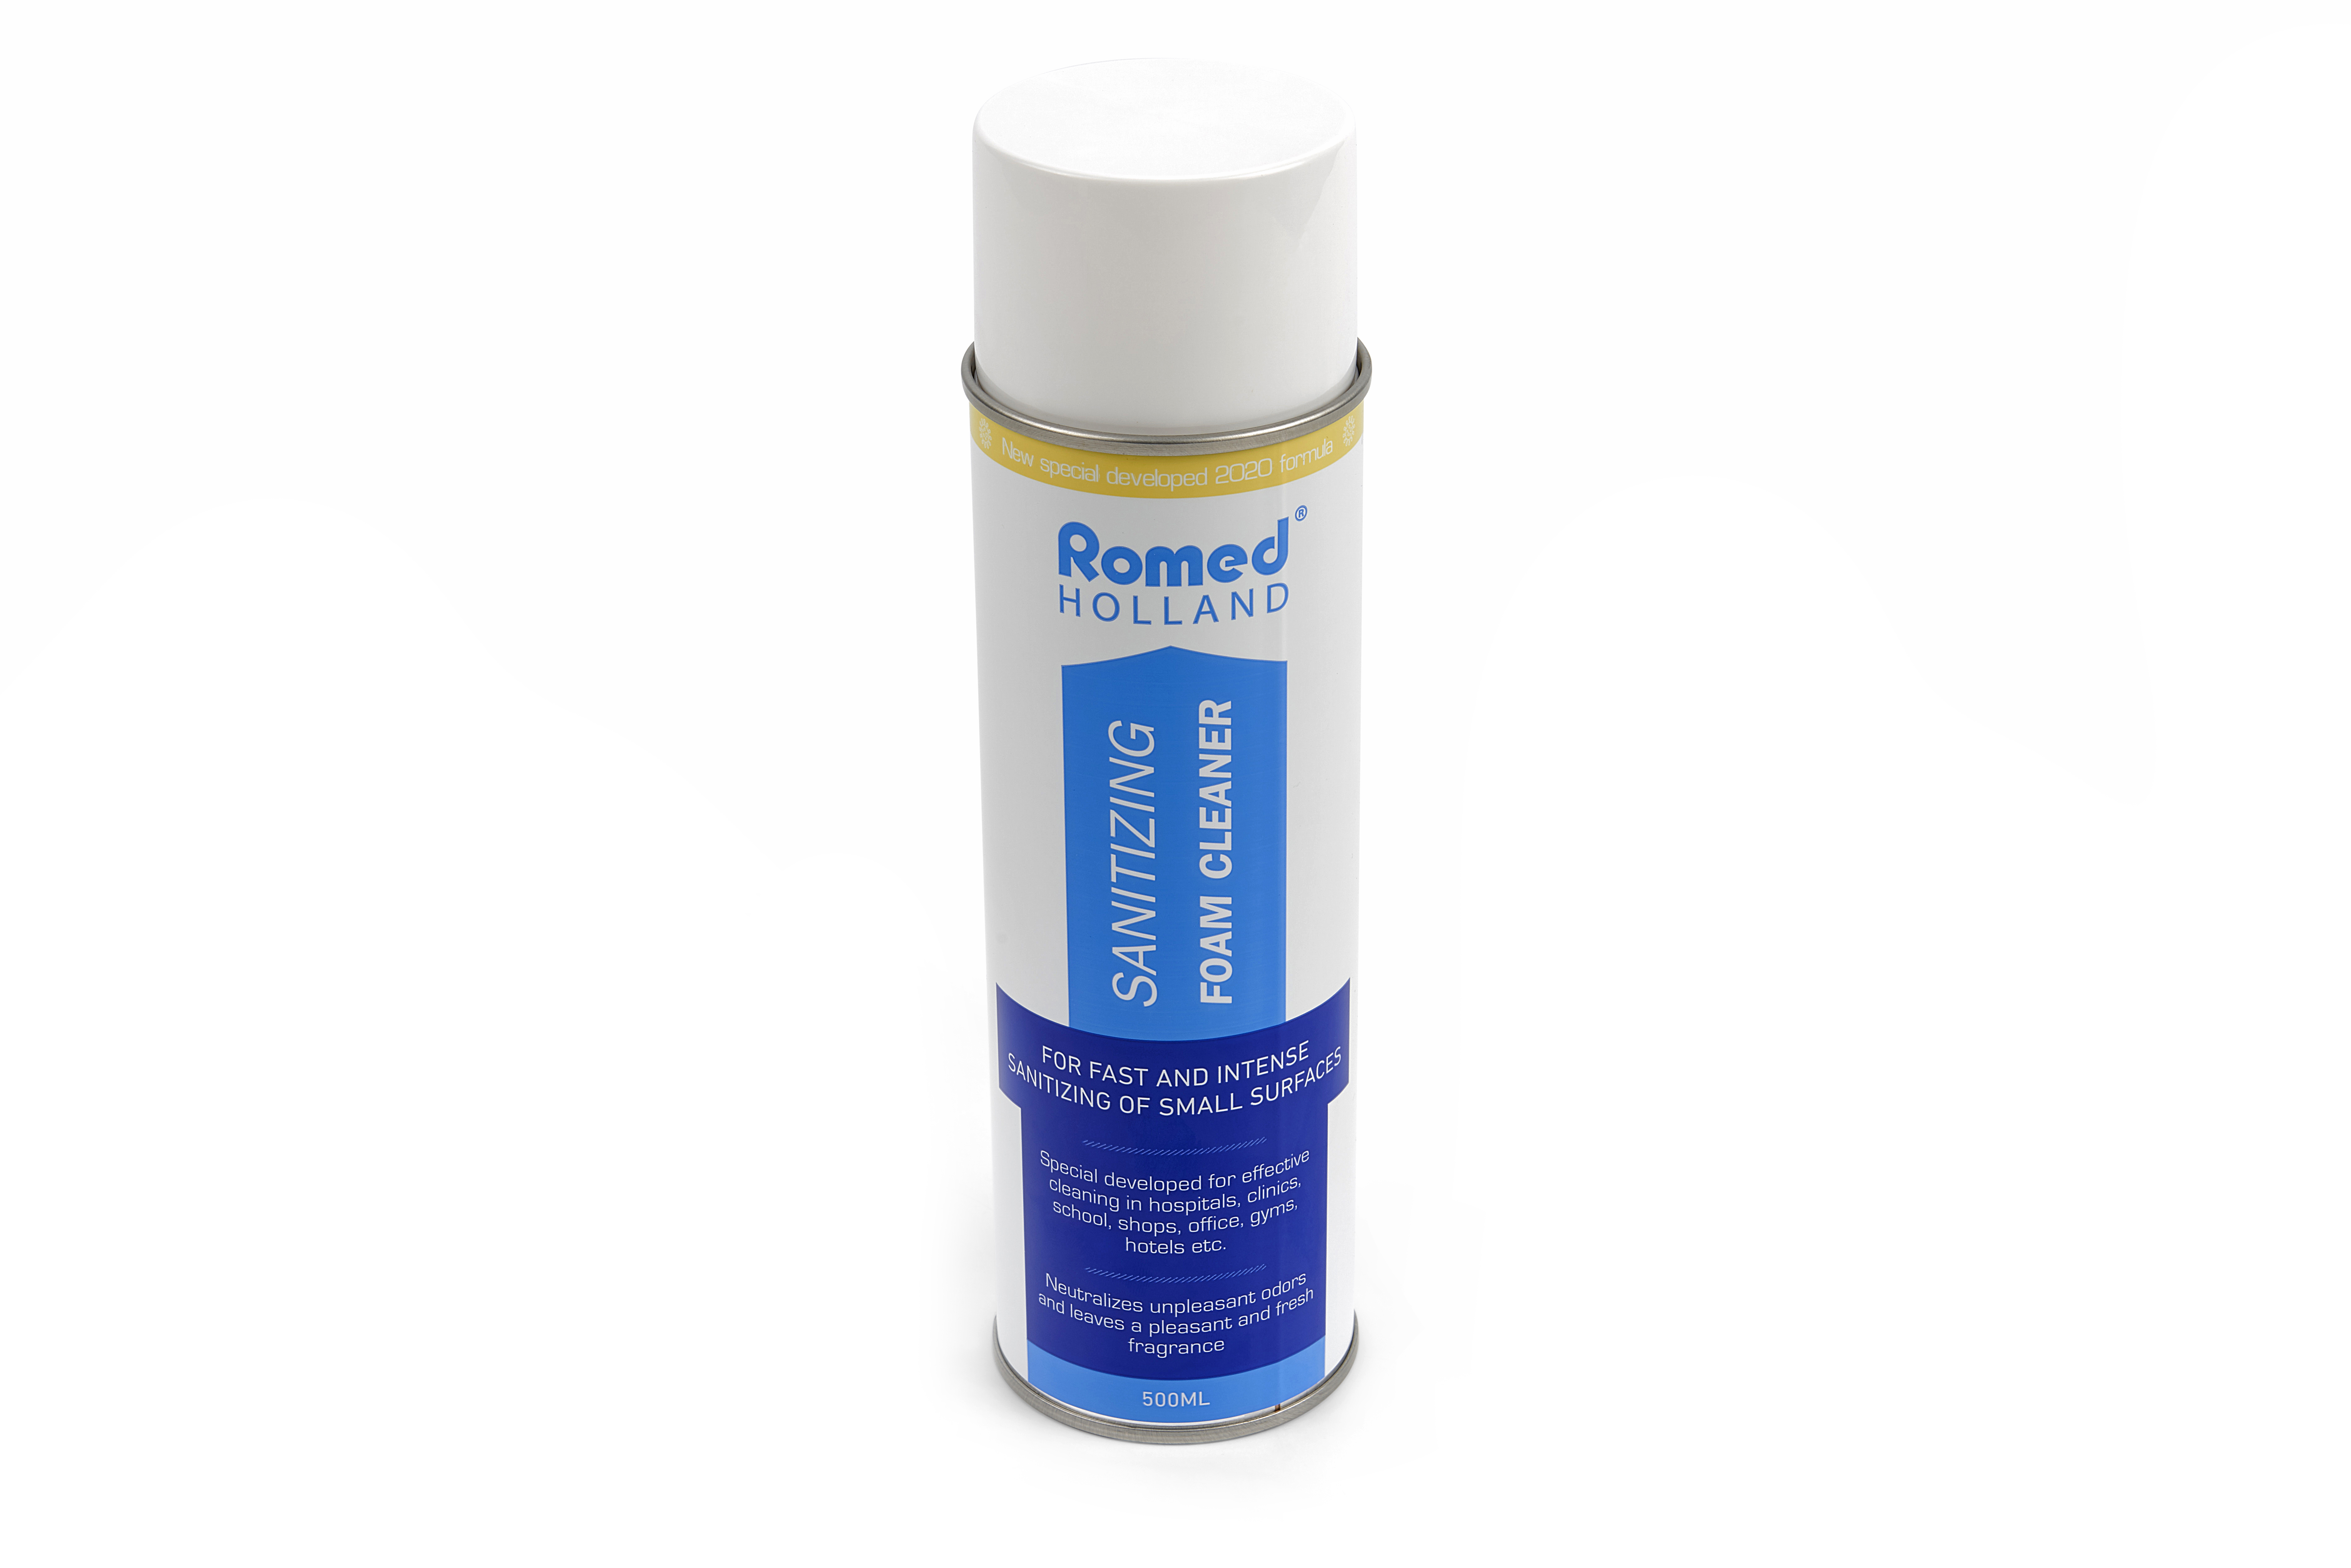 COV19-FOAM Mousse nettoyante Romed pour une désinfection rapide et intense des petites surfaces. 12 aérosols de 500 ml dans un carton.